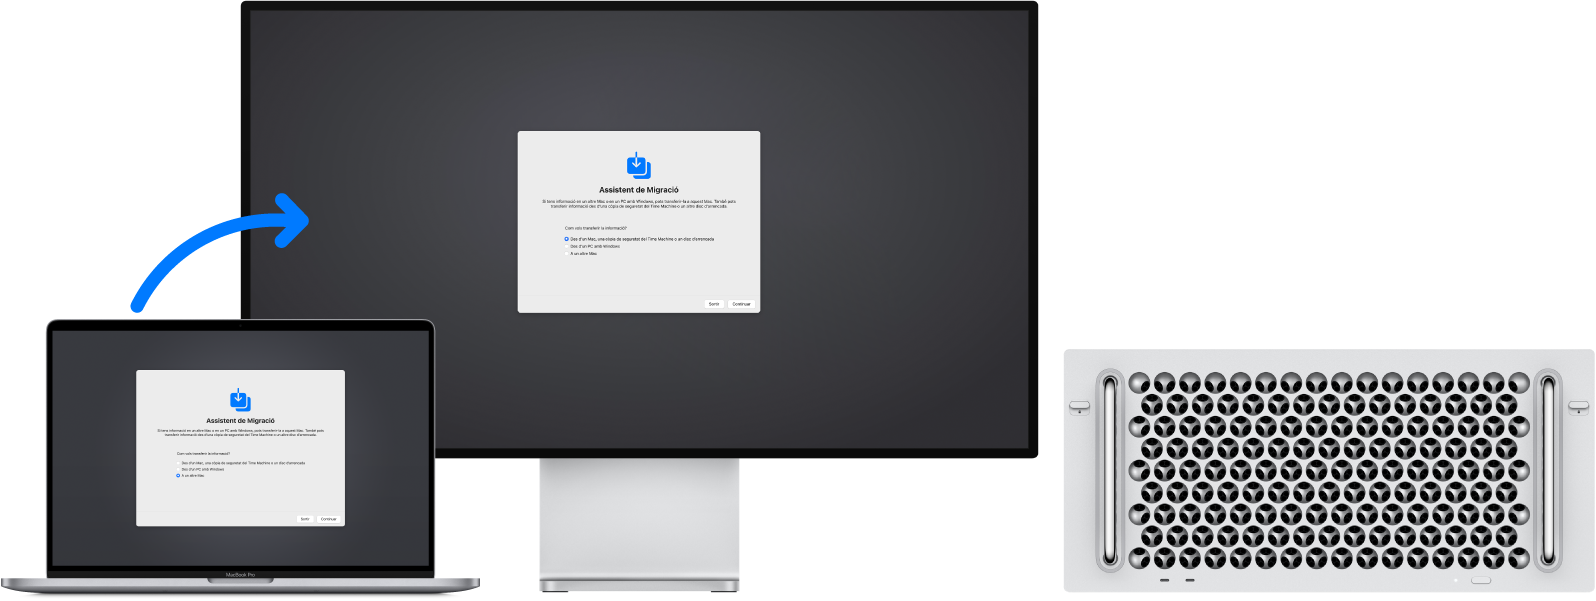 Un MacBook Pro i un Mac Pro amb la pantalla de l’Assistent de Migració. La fletxa que va del MacBook Pro al Mac Pro indica la transferència de dades d’un ordinador a l’altre.